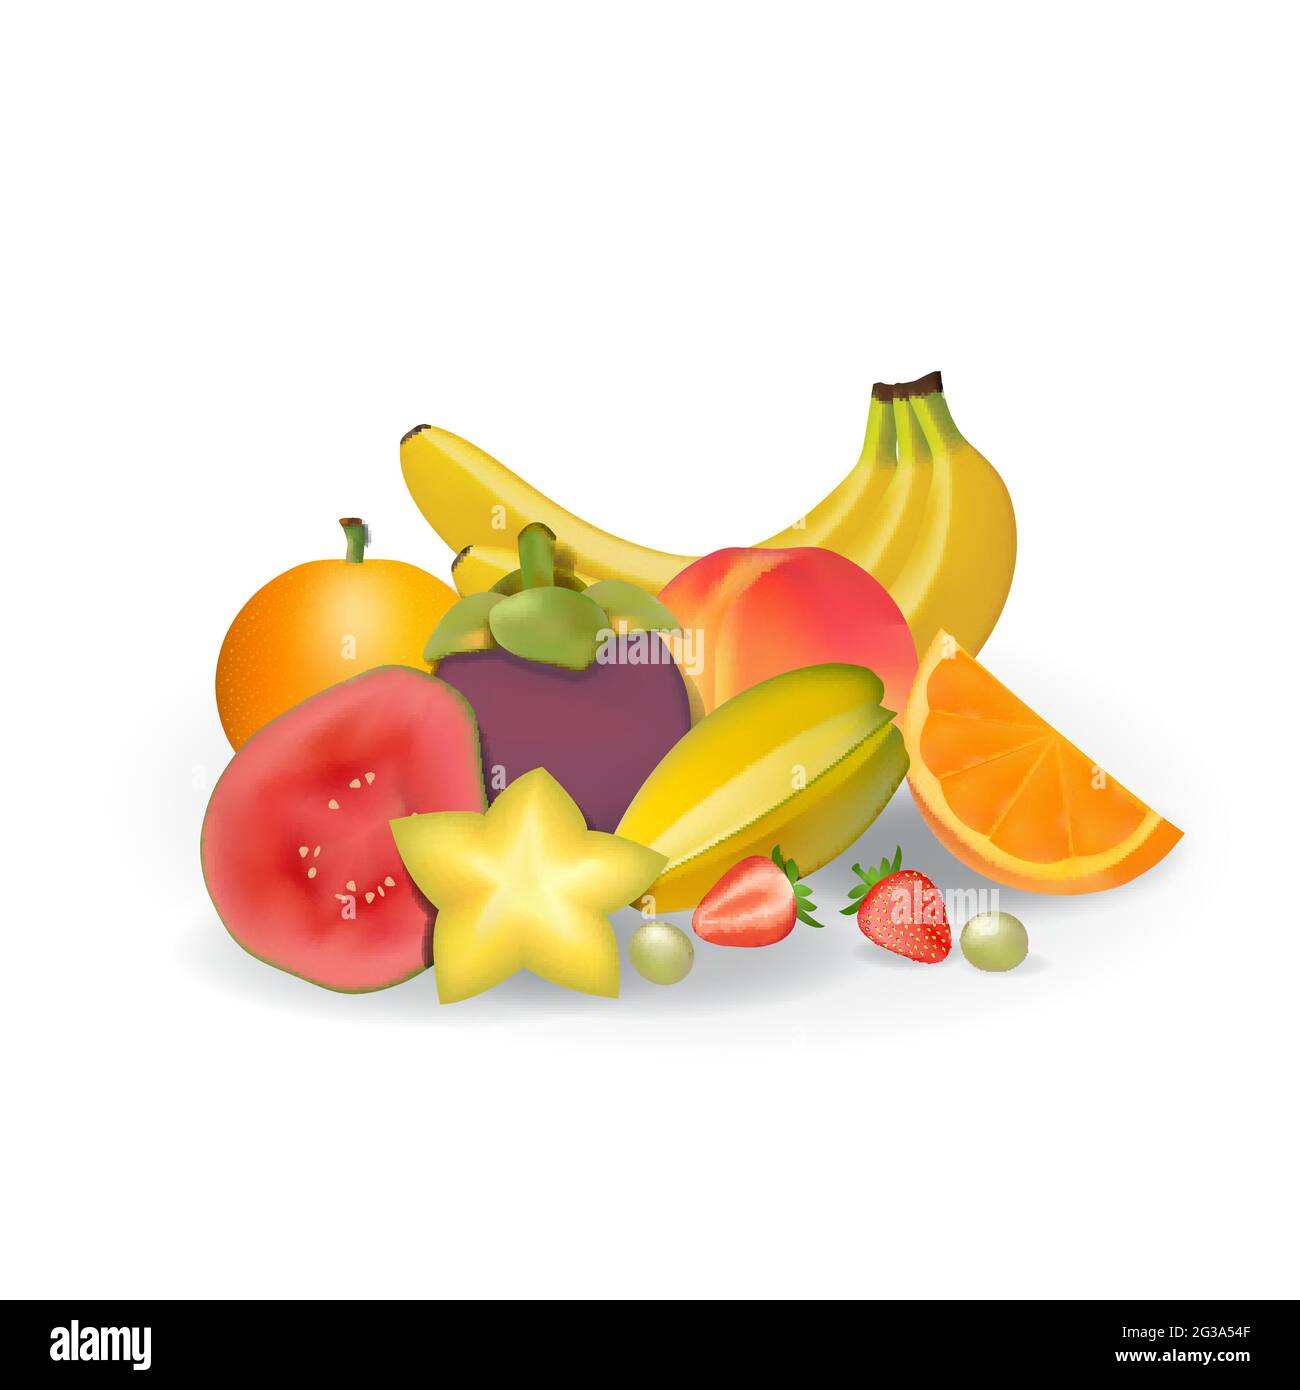 Frutta fresca naturale realistica su White Summer Isolated Vector Illustration 04 Illustrazione Vettoriale